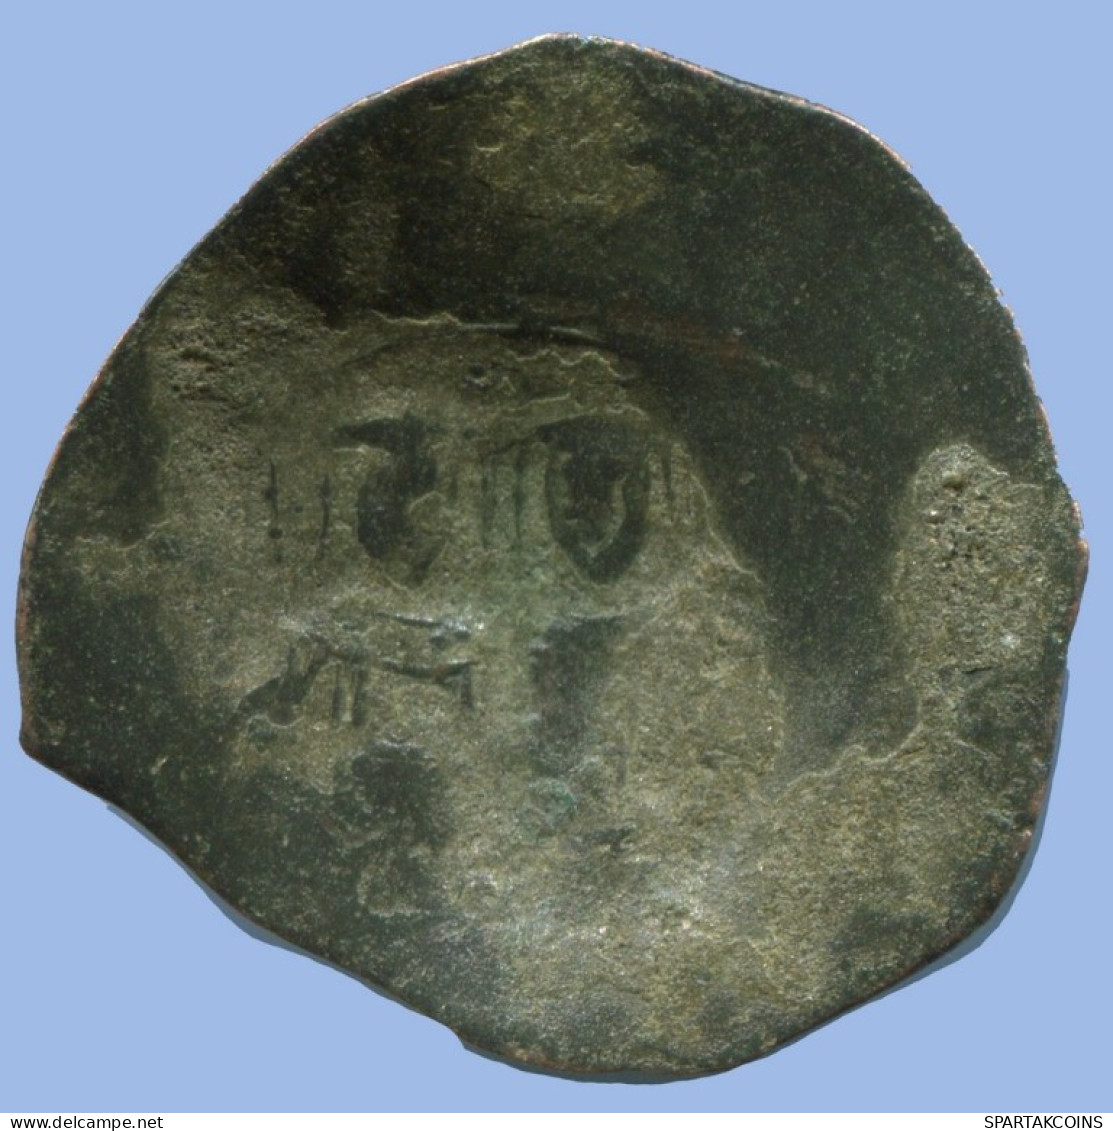 ALEXIOS III ANGELOS ASPRON TRACHY BILLON BYZANTINE Coin 2.1g/24mm #AB449.9.U.A - Byzantine